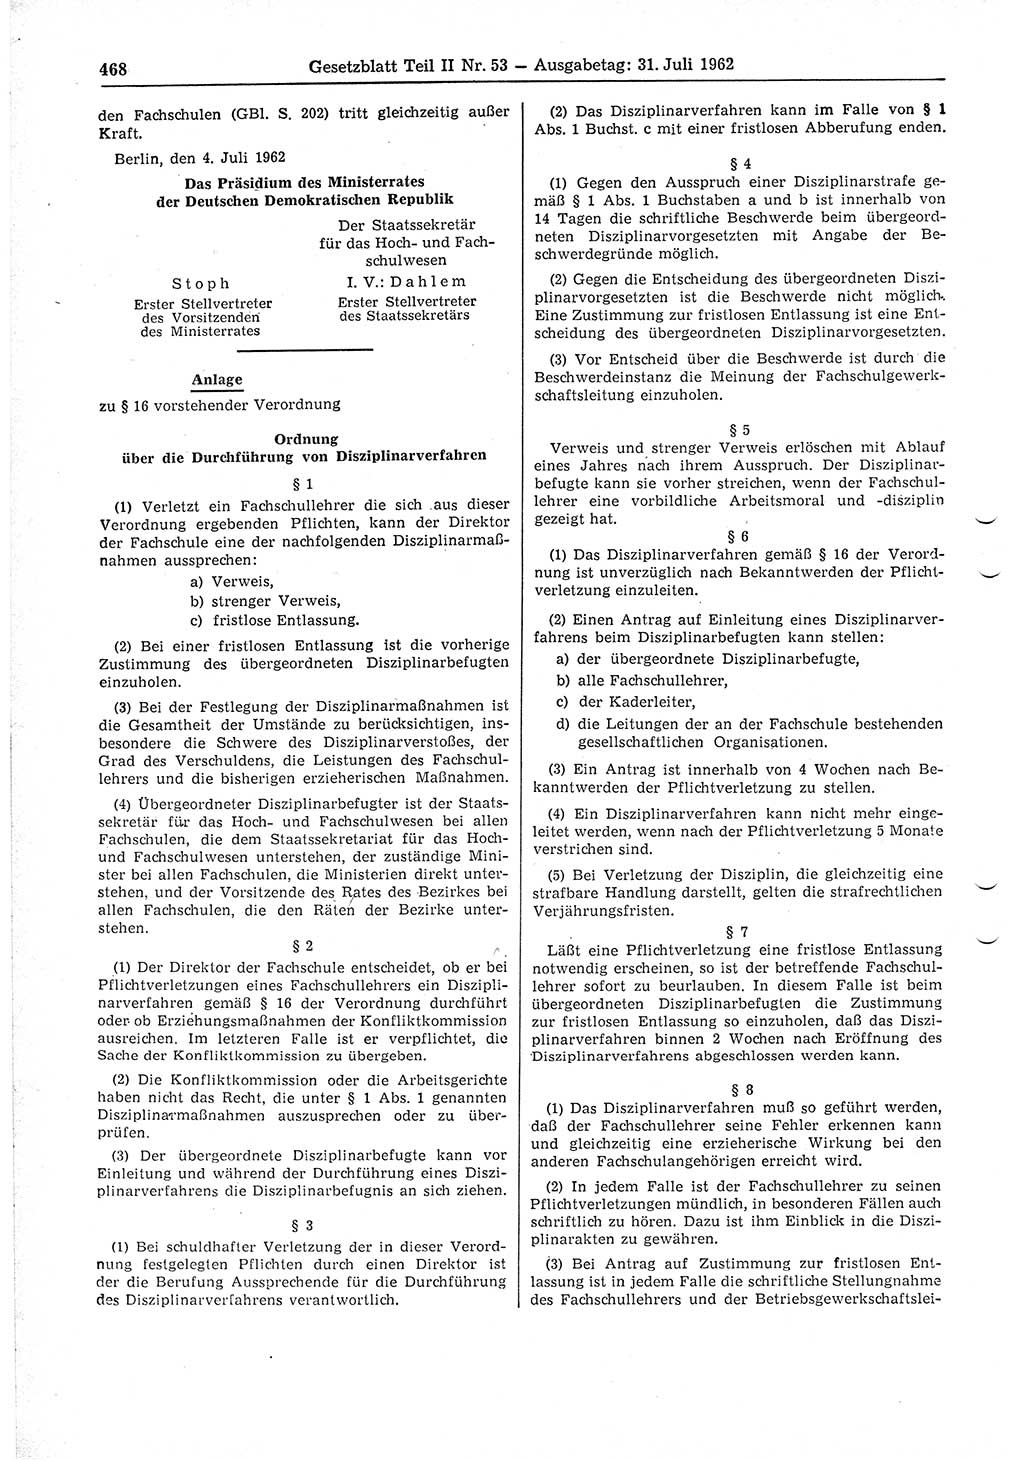 Gesetzblatt (GBl.) der Deutschen Demokratischen Republik (DDR) Teil ⅠⅠ 1962, Seite 468 (GBl. DDR ⅠⅠ 1962, S. 468)